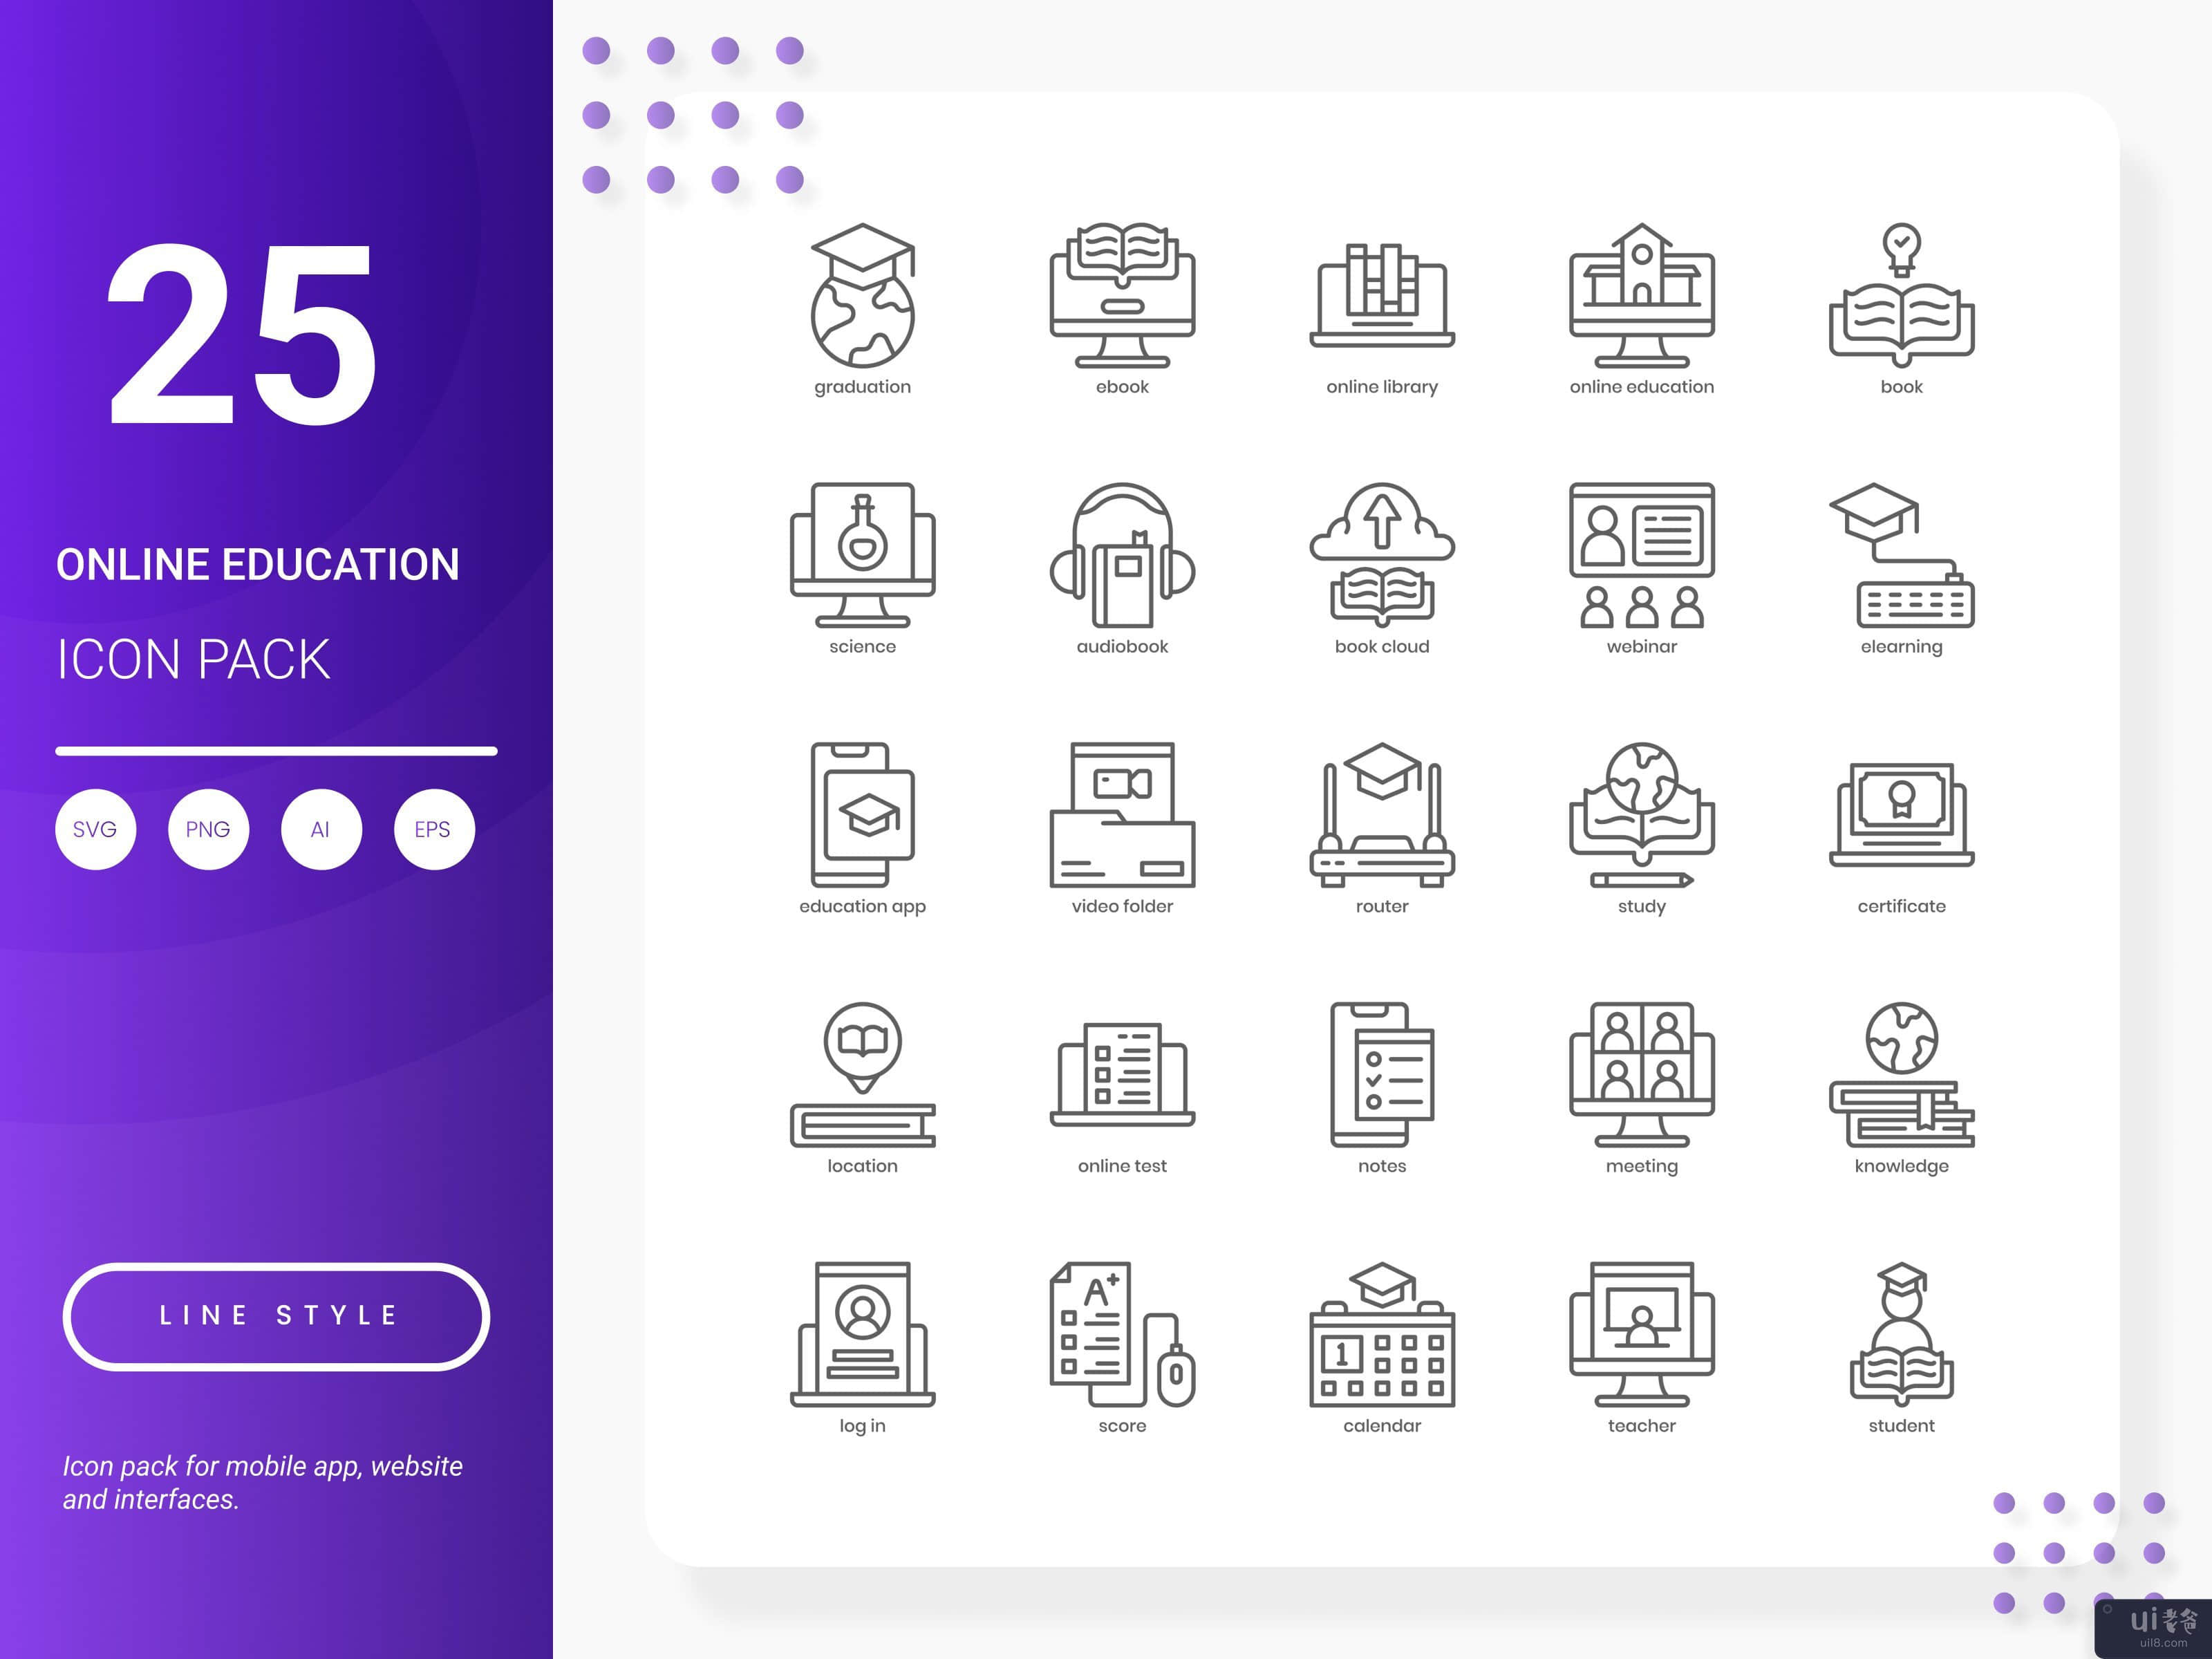 在线教育图标包(Online Education Icon Pack)插图